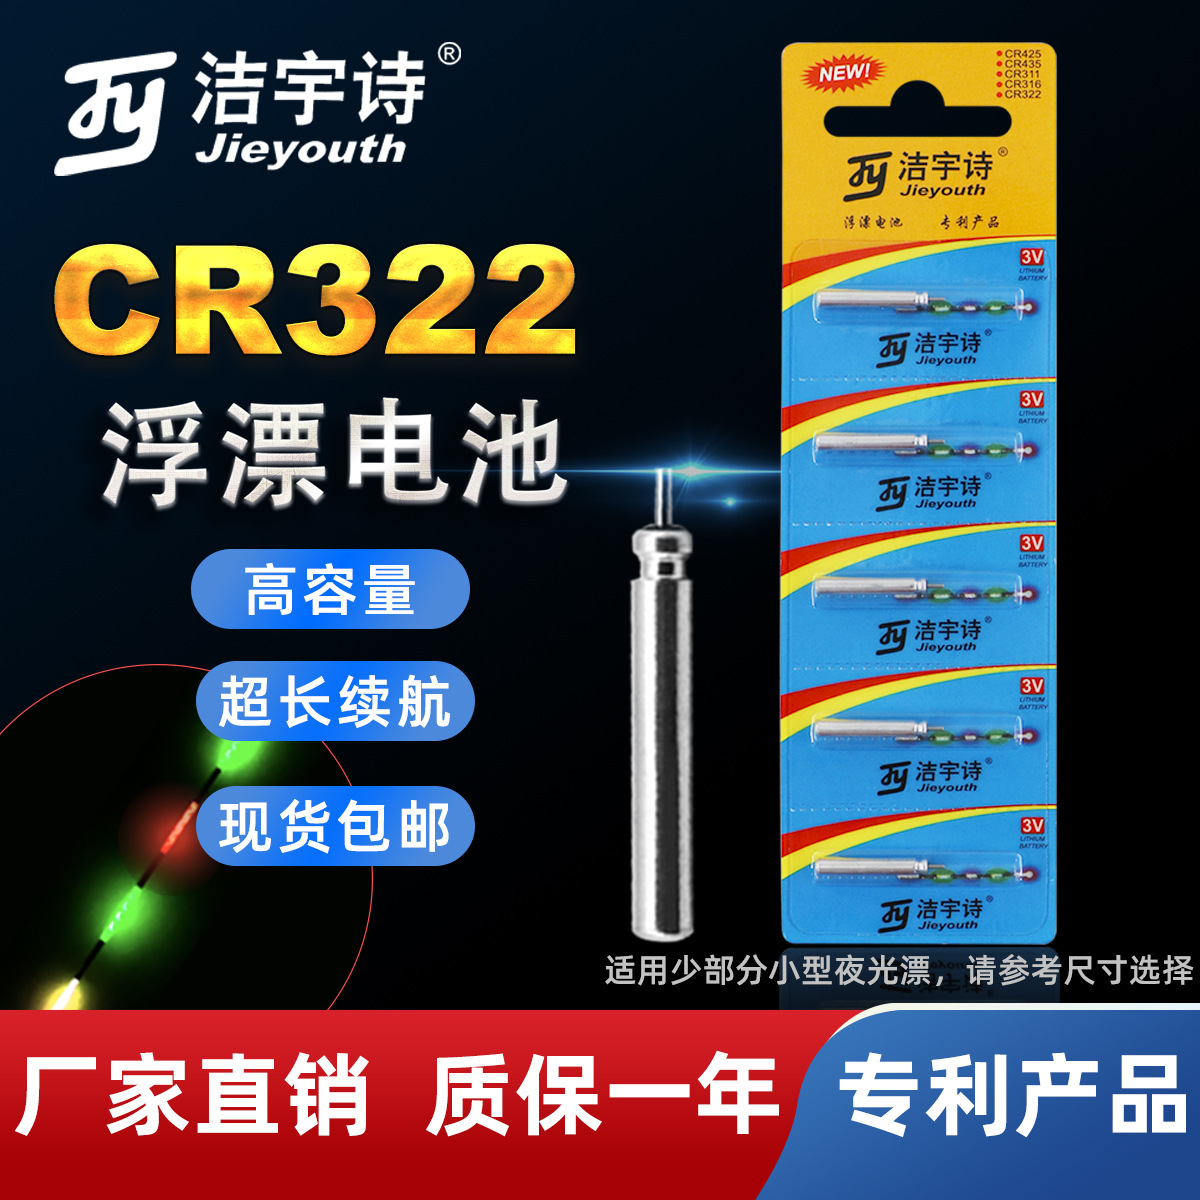 厂家现货CR322高性价比5粒装电子漂电池 钓鱼浮漂电池 夜光漂电池